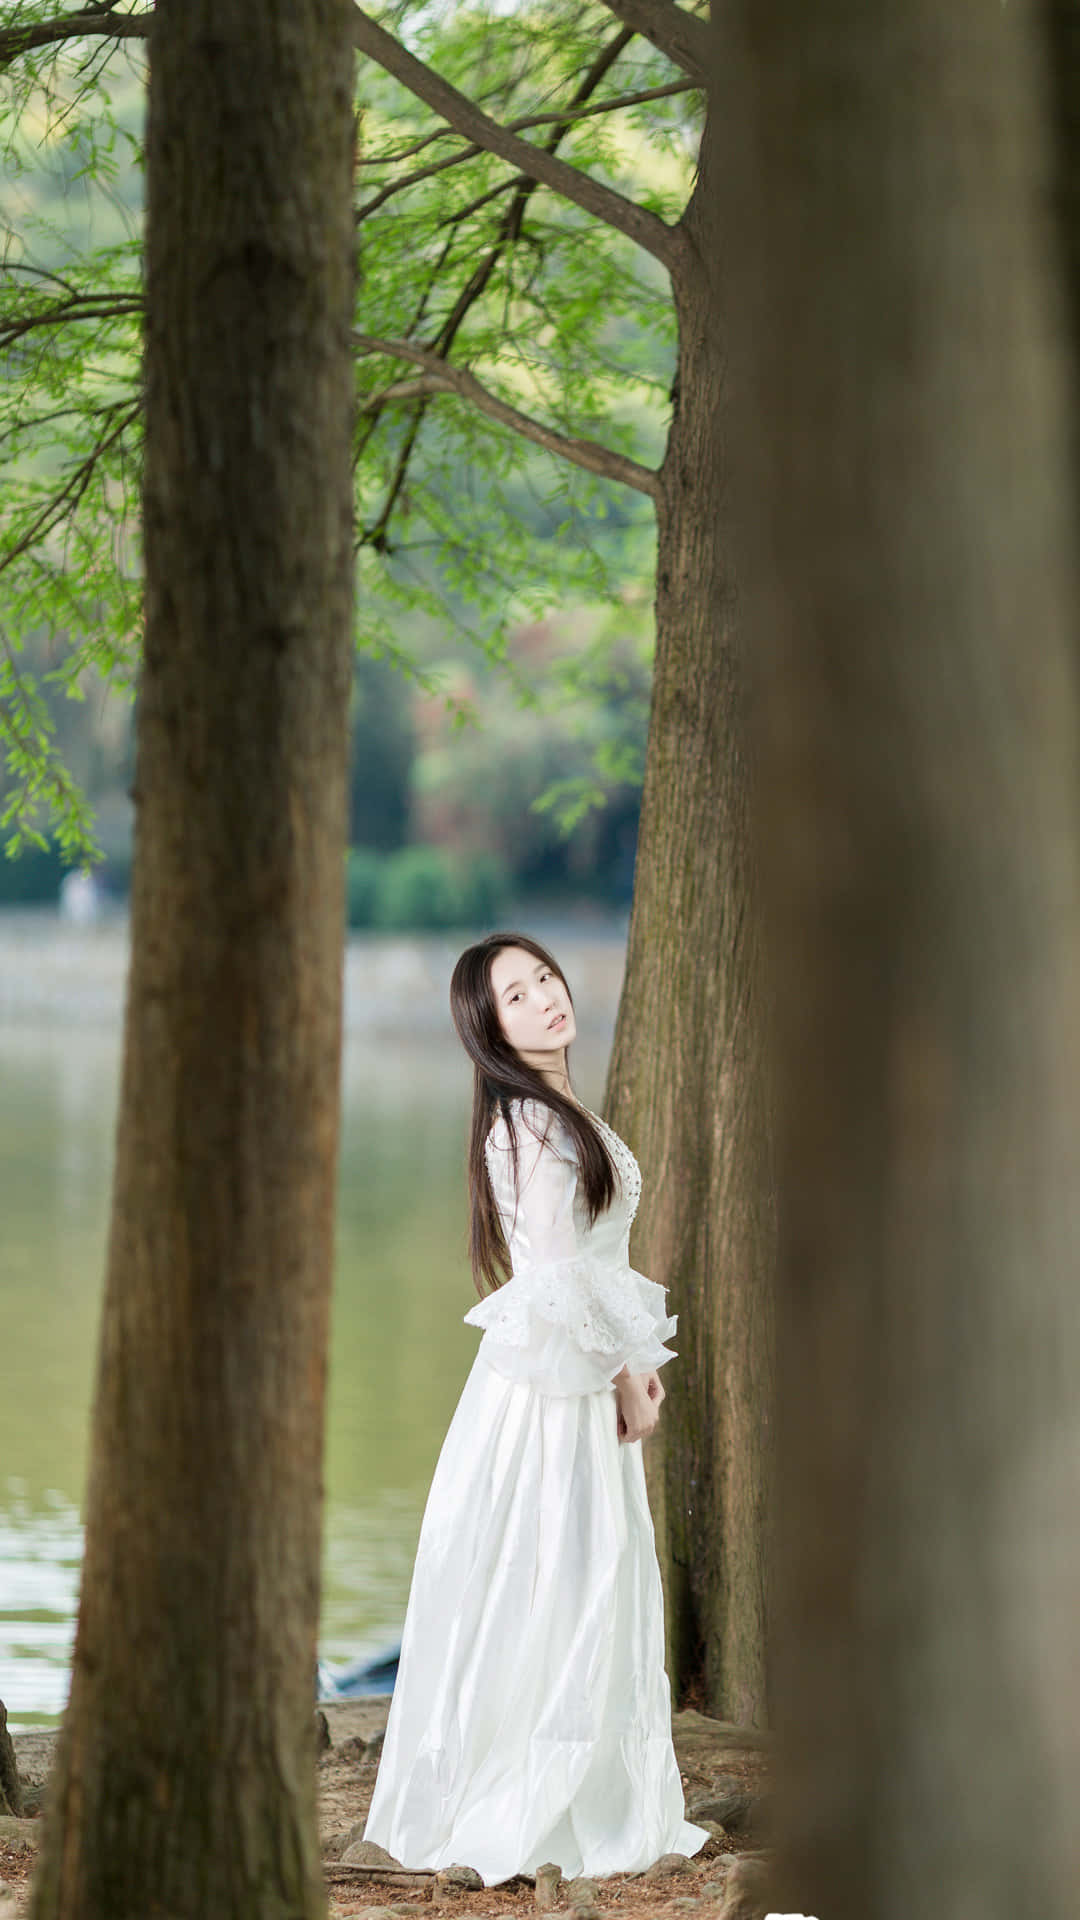 Sød koreansk kvinde i en hvid kjole Wallpaper